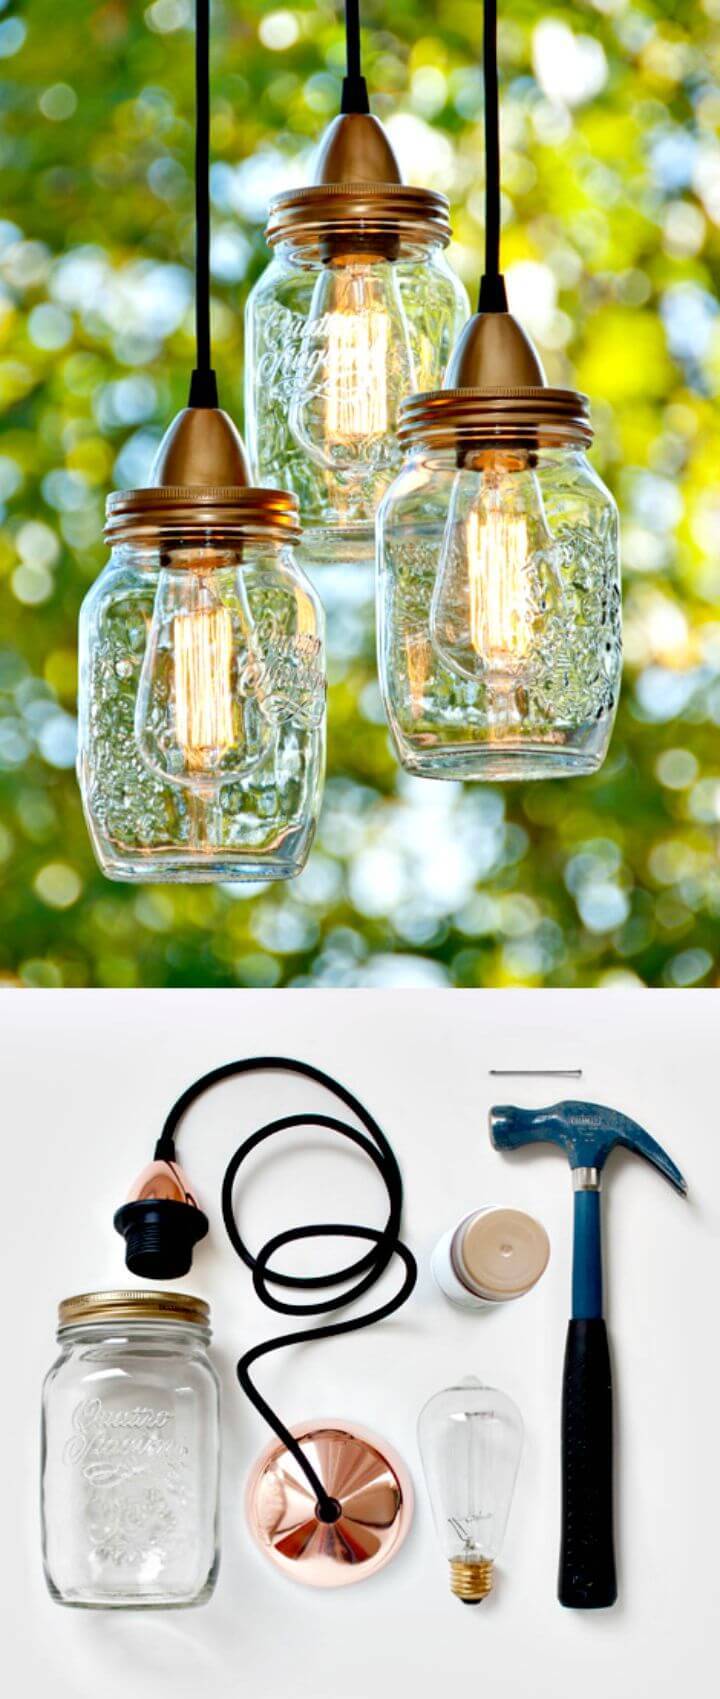 DIY Maso Jar Bokaallamp - Outdoor Lighting Ideas
